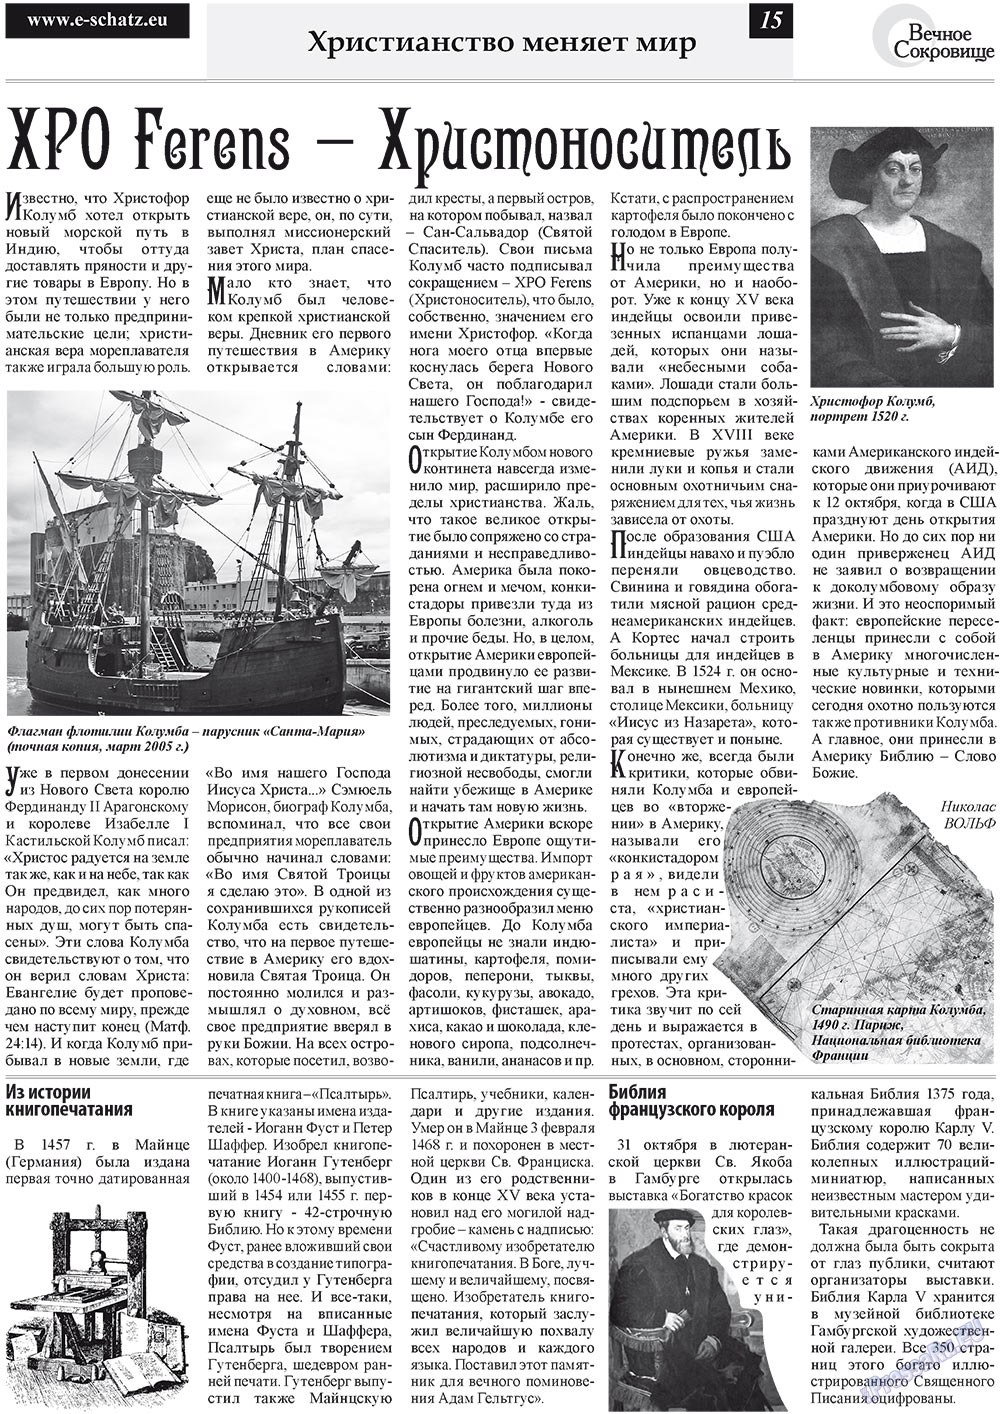 Вечное сокровище, газета. 2010 №4 стр.15